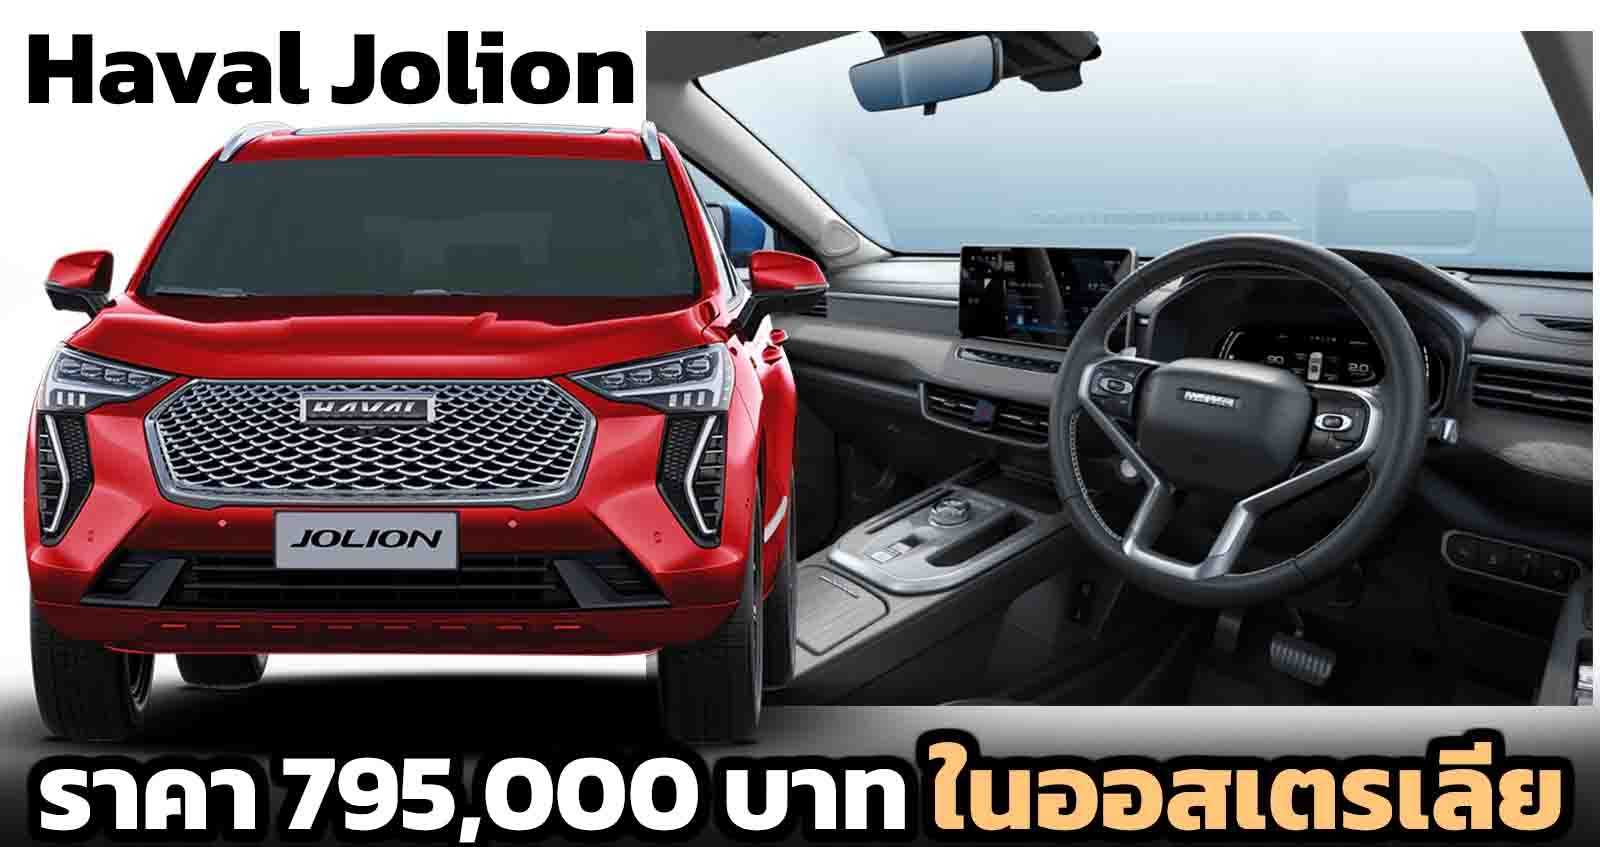 เปิดราคา Haval Jolion SUV เริ่ม 795,000 บาท ในออสเตรเลีย